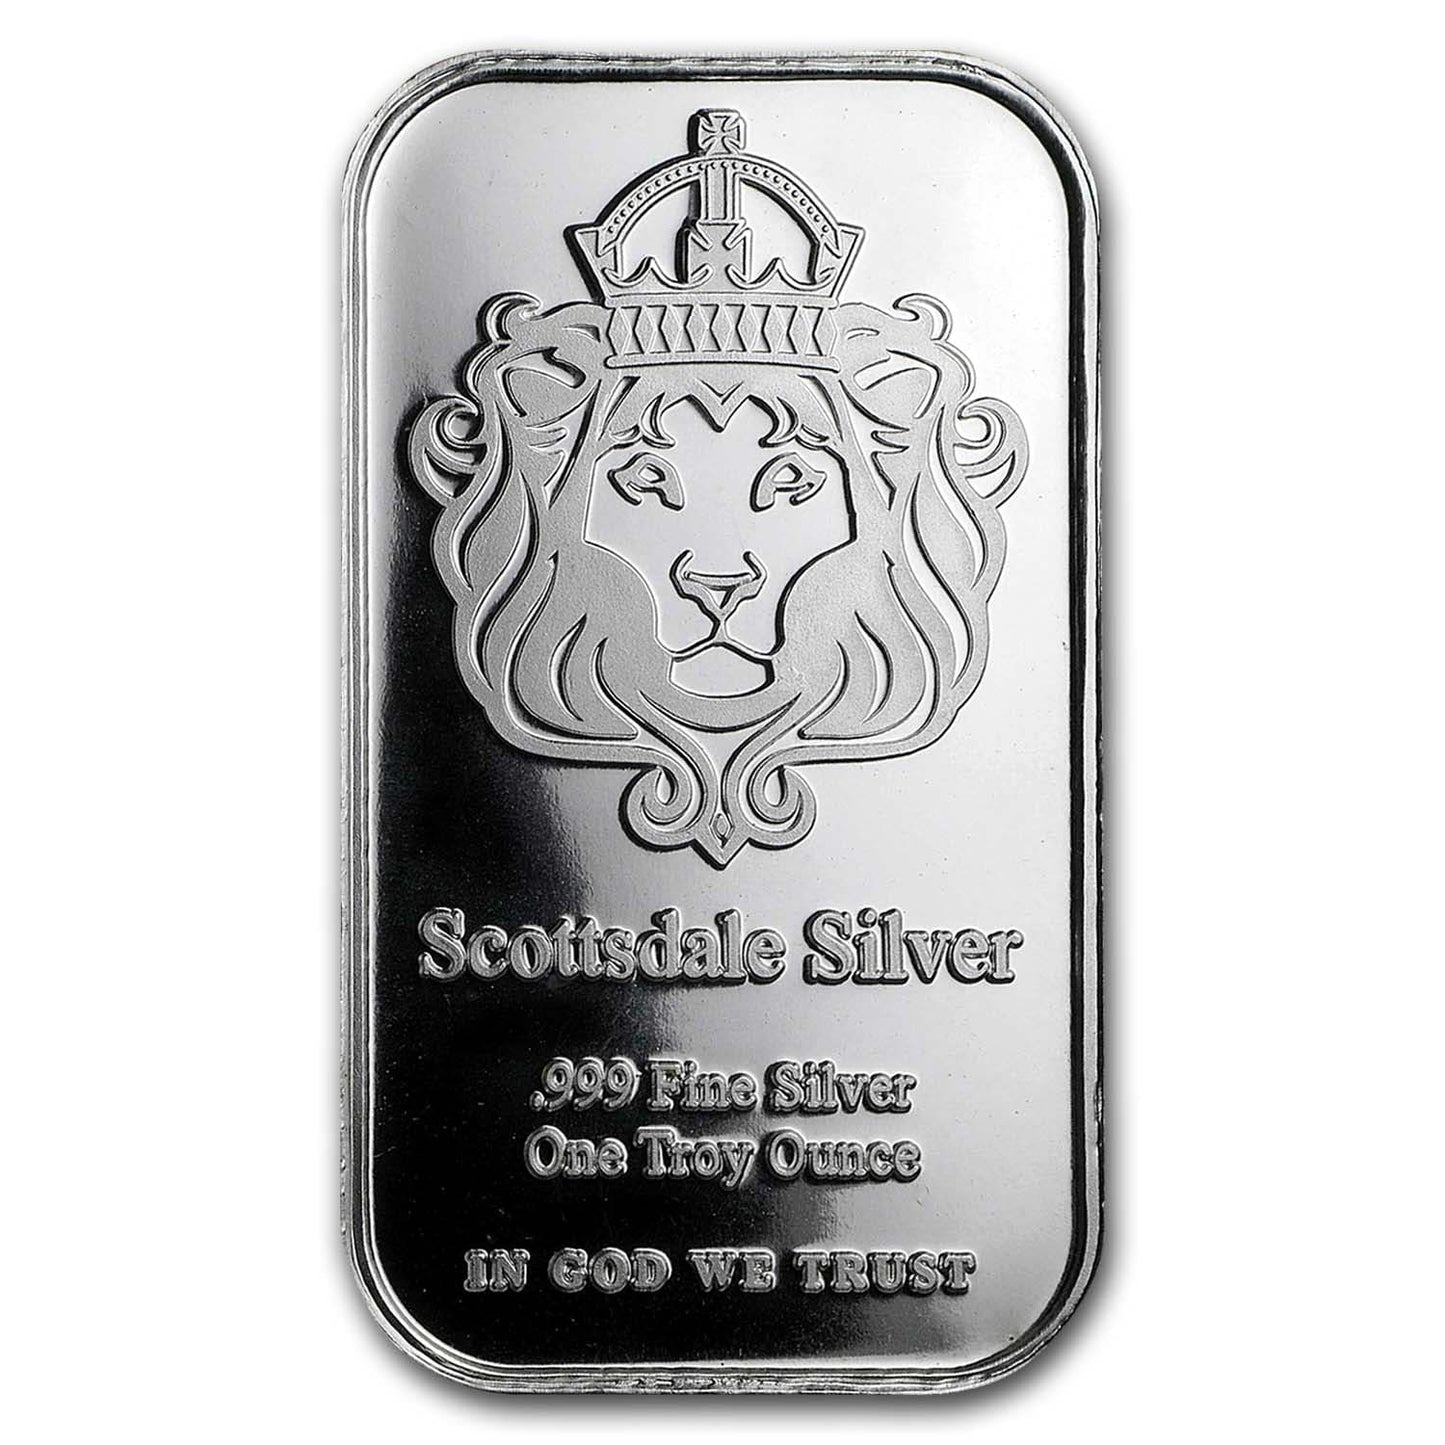 1 oz Silver Bar – Scottsdale